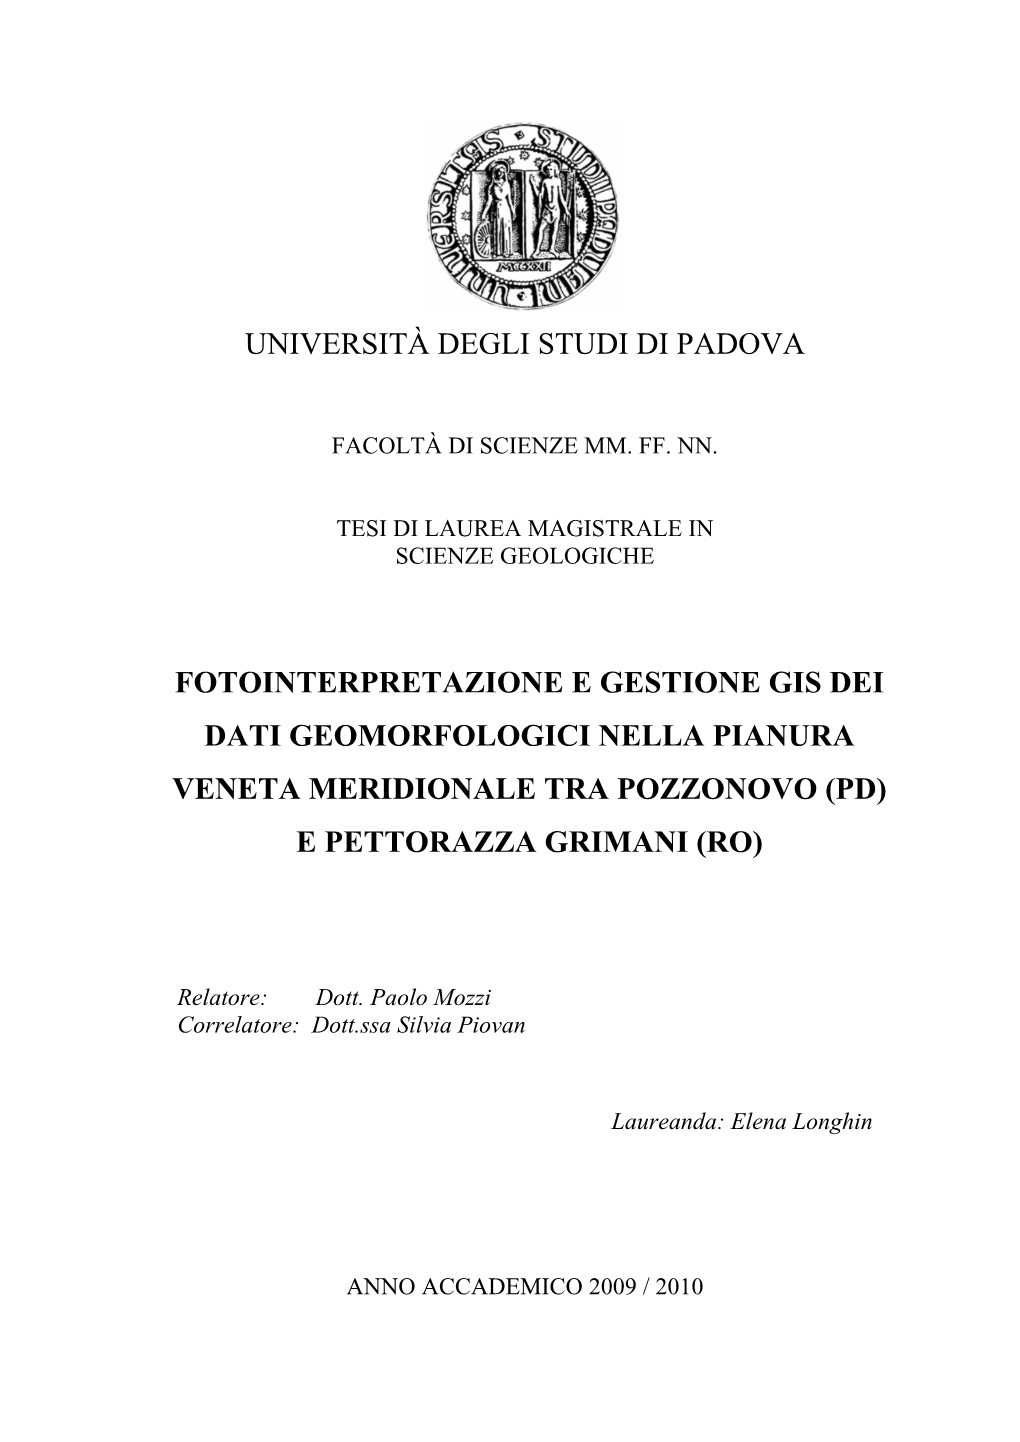 Università Degli Studi Di Padova Fotointerpretazione E Gestione Gis Dei Dati Geomorfologici Nella Pianura Veneta Meridionale Tr